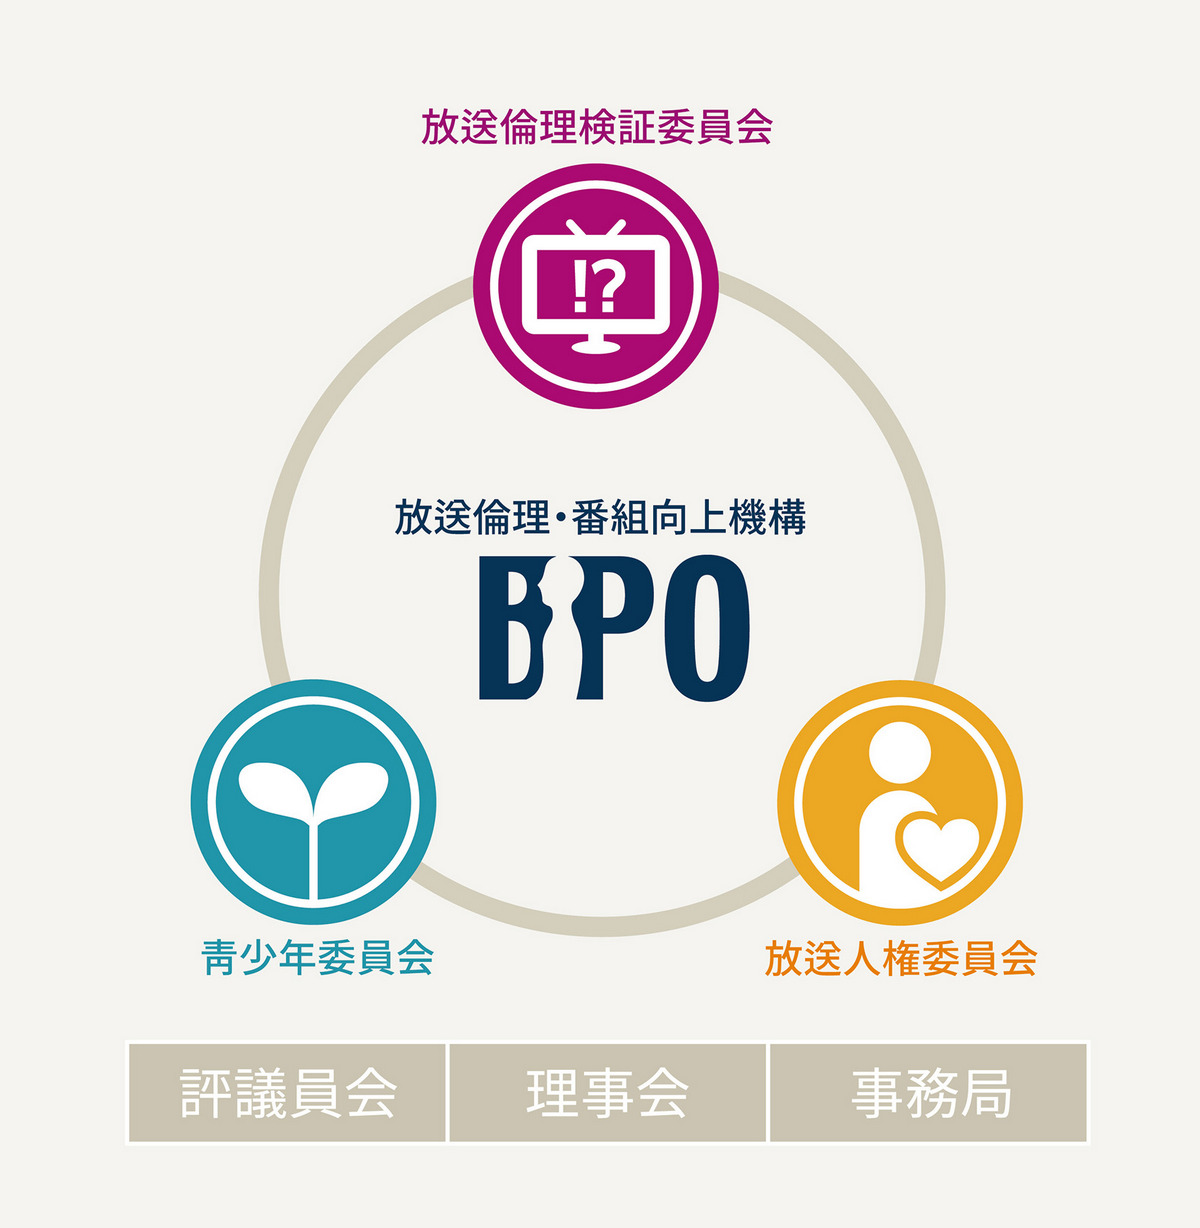 BPO組織圖